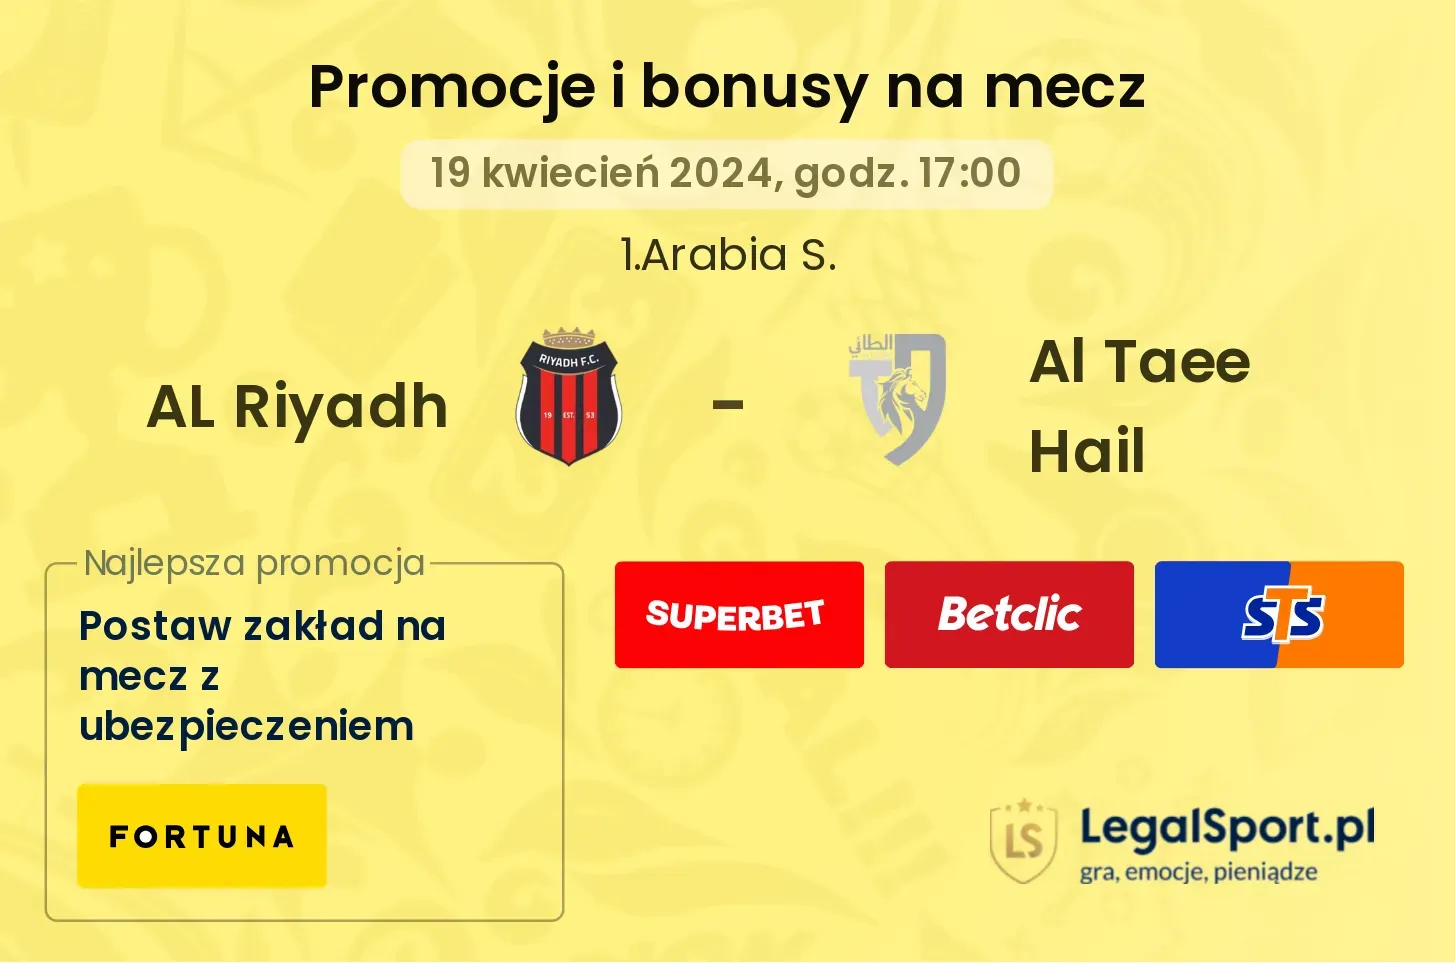 AL Riyadh - Al Taee Hail promocje bonusy na mecz